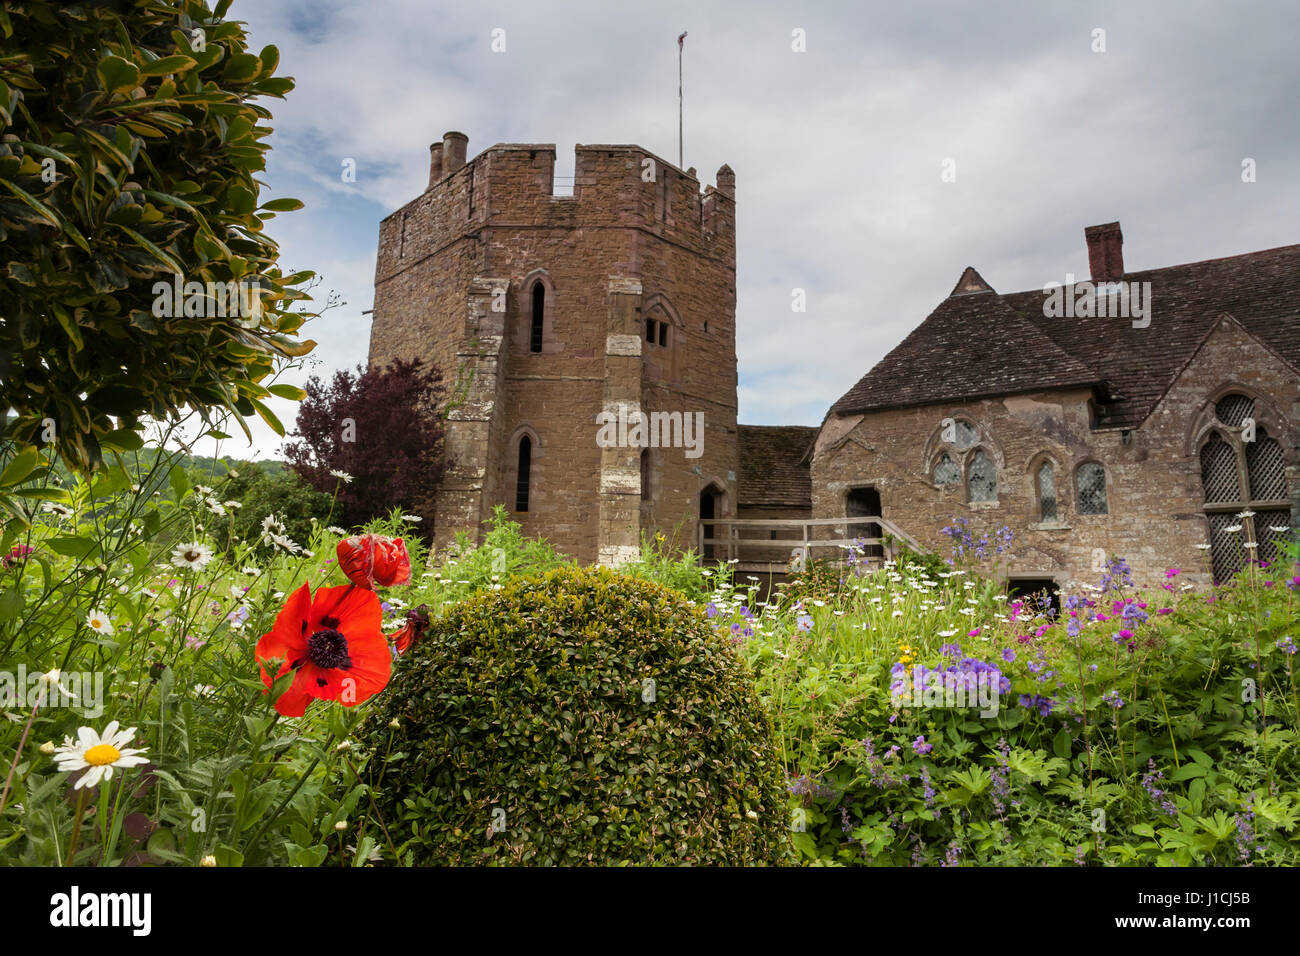 Manoir fortifié médiéval de Stokesay Castle, Shropshire, England, UK : montrant la tour sud Banque D'Images